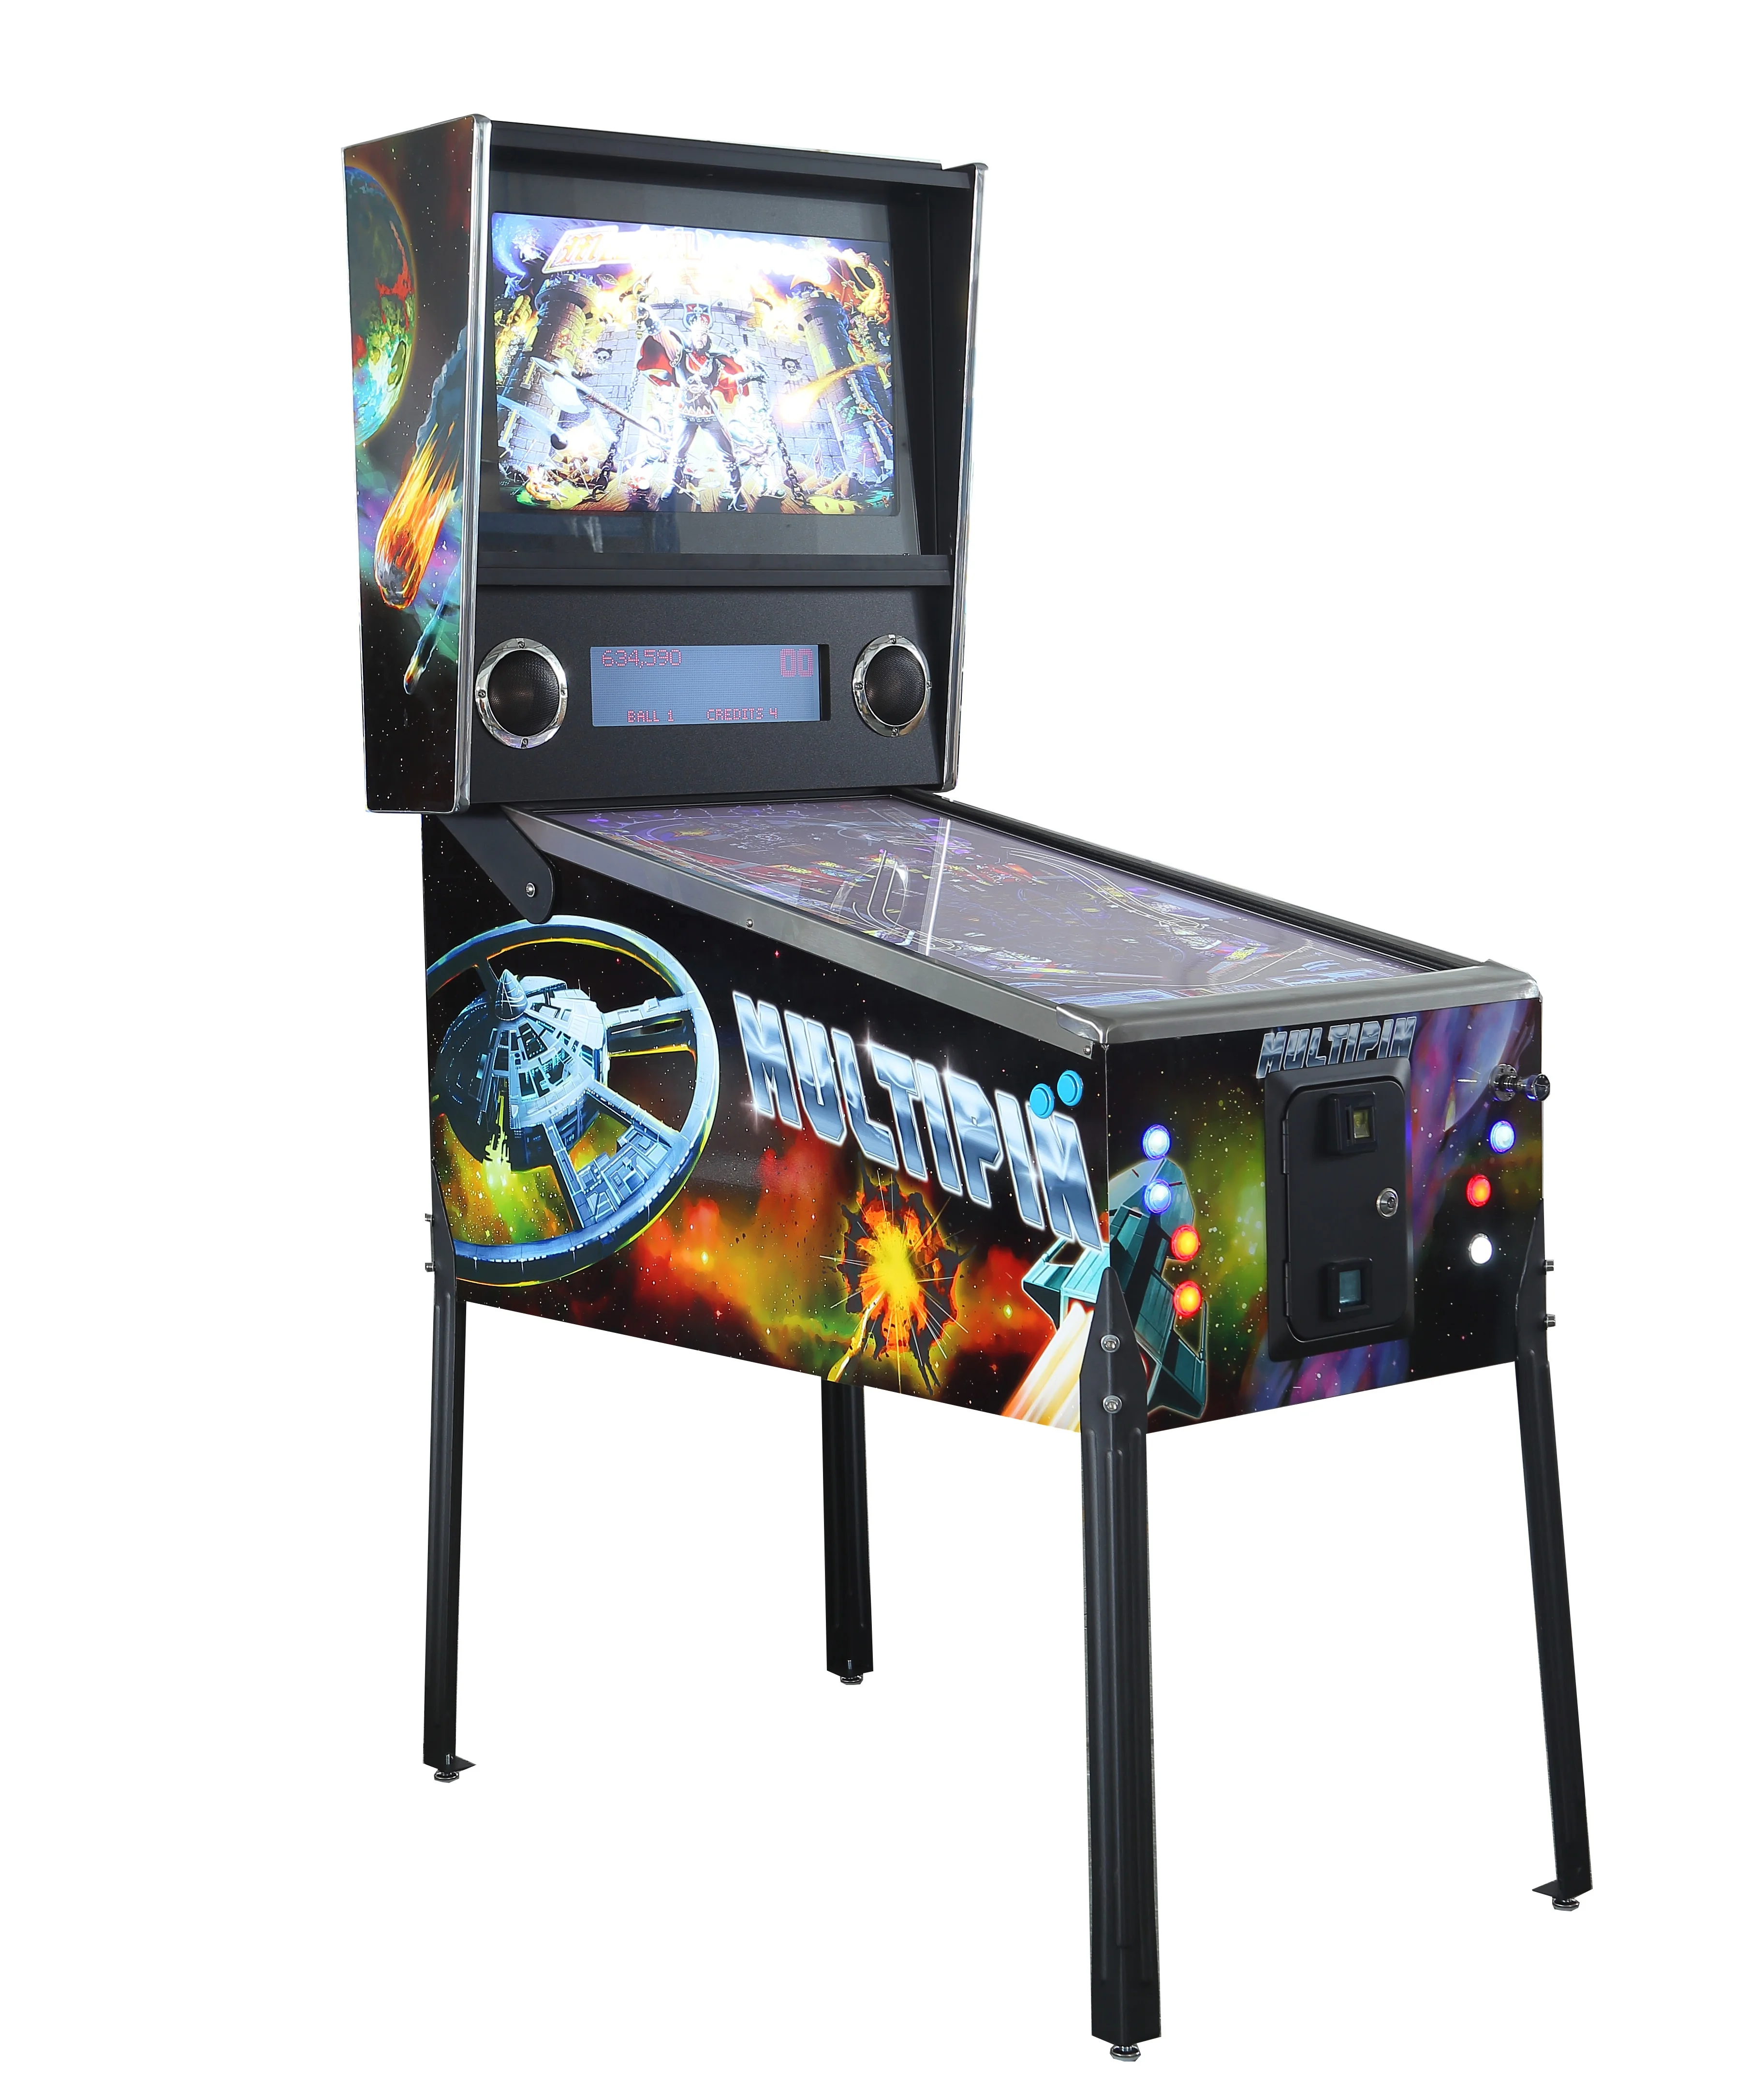 Maquina Pinball Fliperama Independence Day Game Jogo Arcade - Videogames -  São Cristóvão, Rio de Janeiro 1204242345